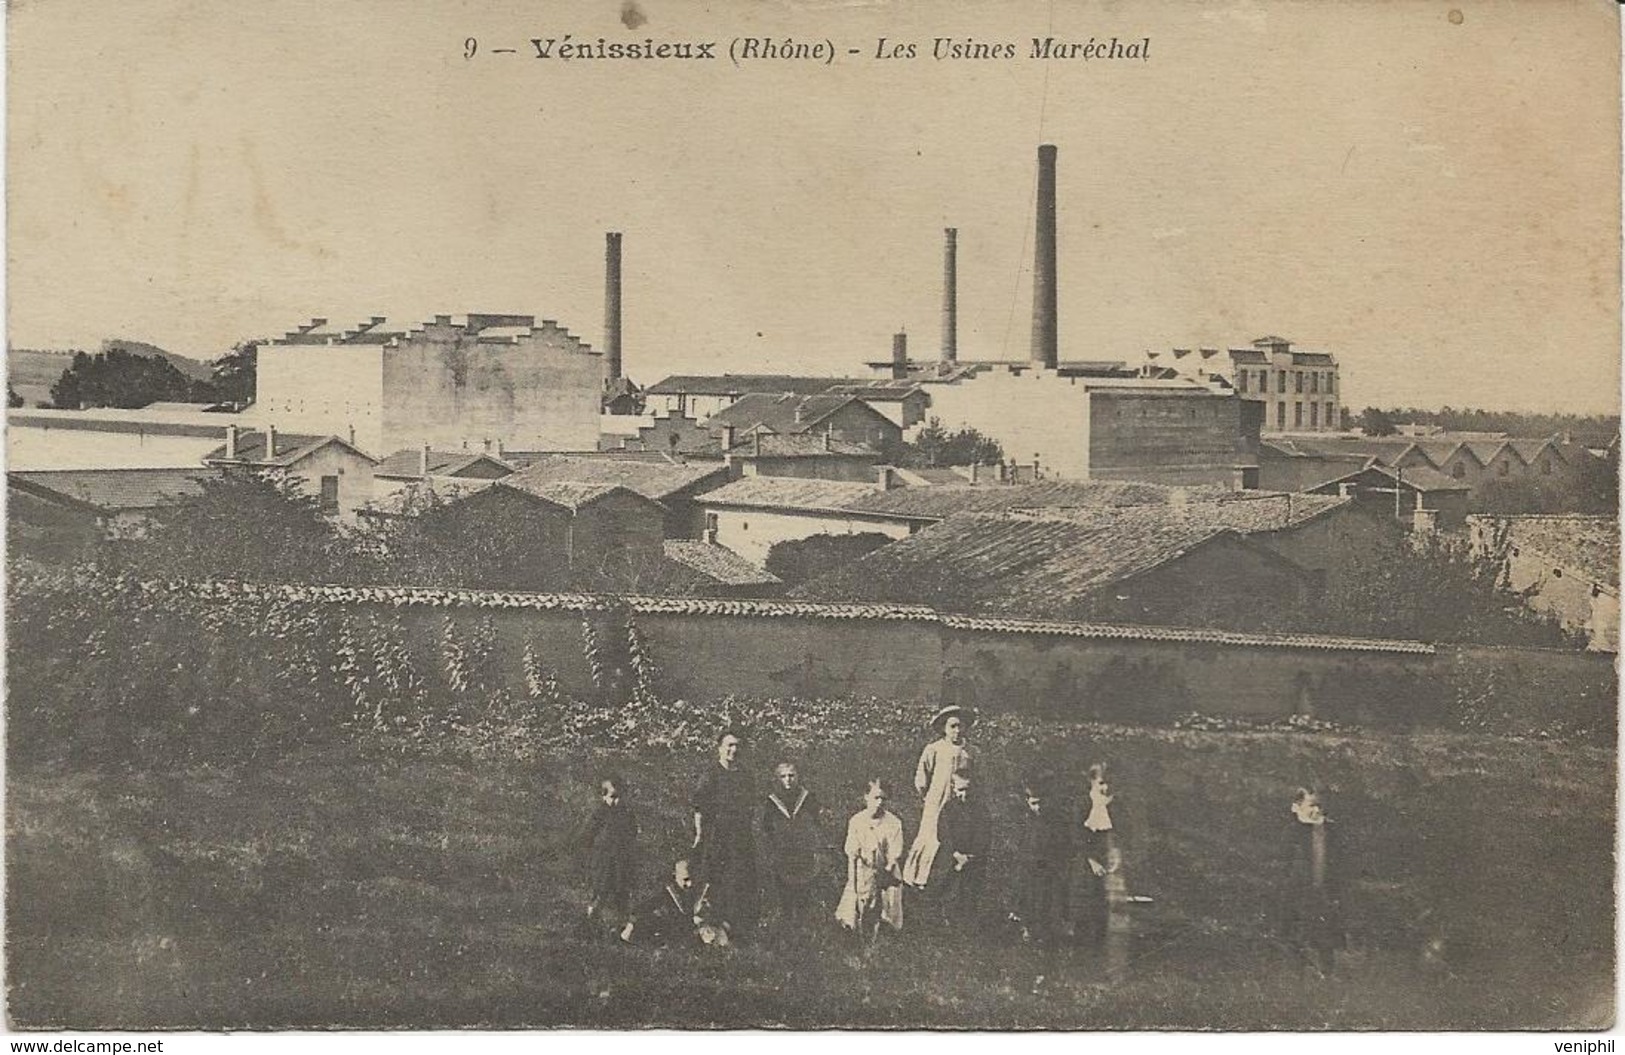 VENISSIEUX - RHONE - LES USINES MARECHAL  ANNEE 1908 - Vénissieux